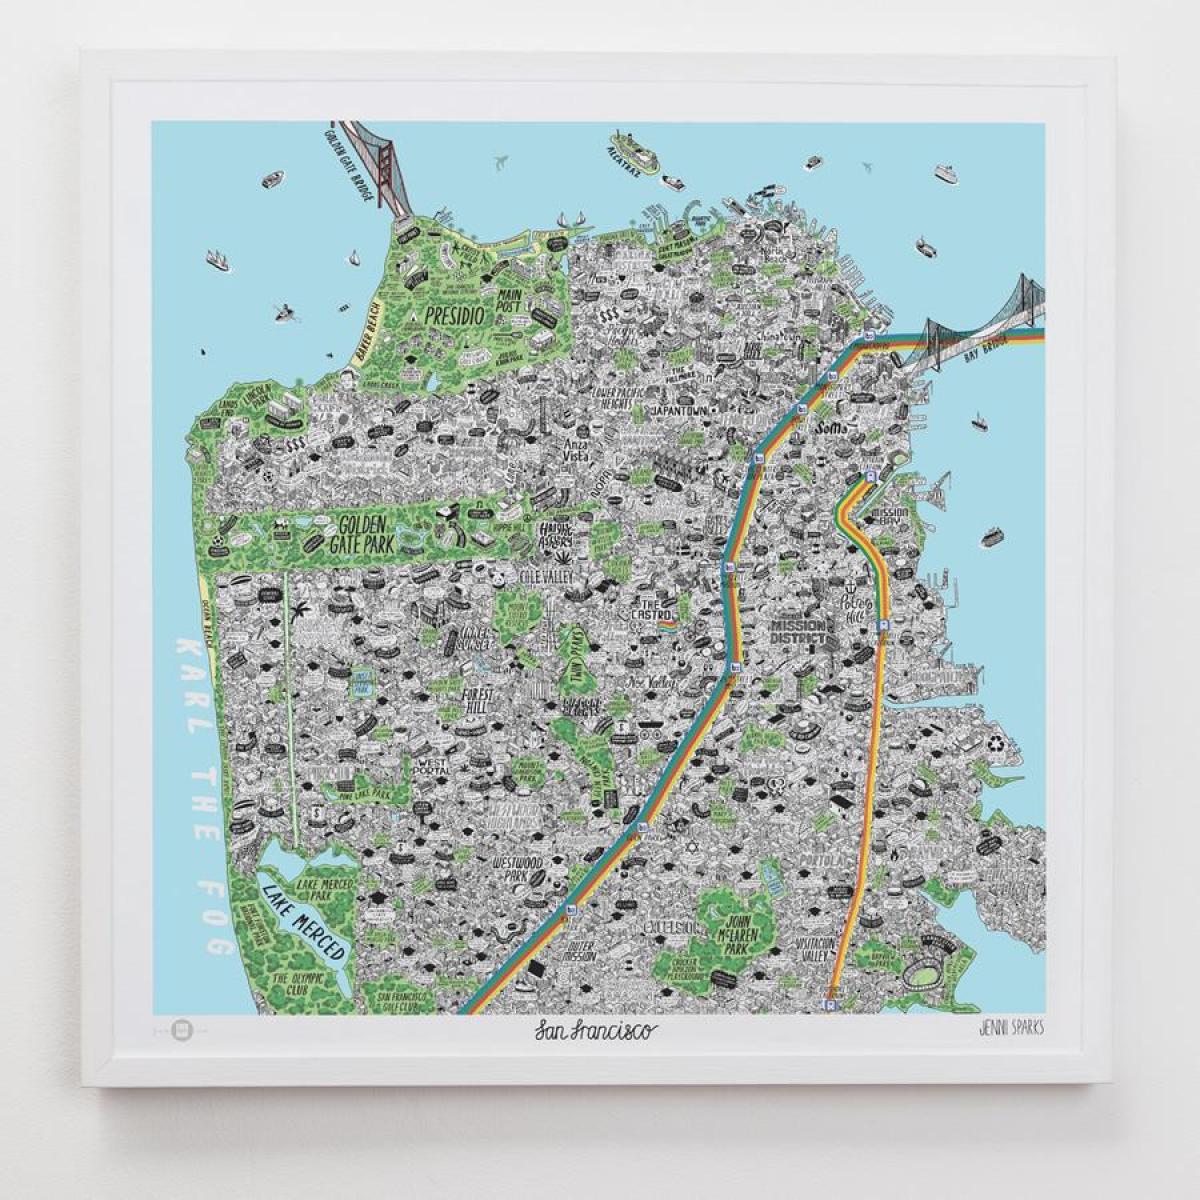 המפה של סן פרנסיסקו לאמנות